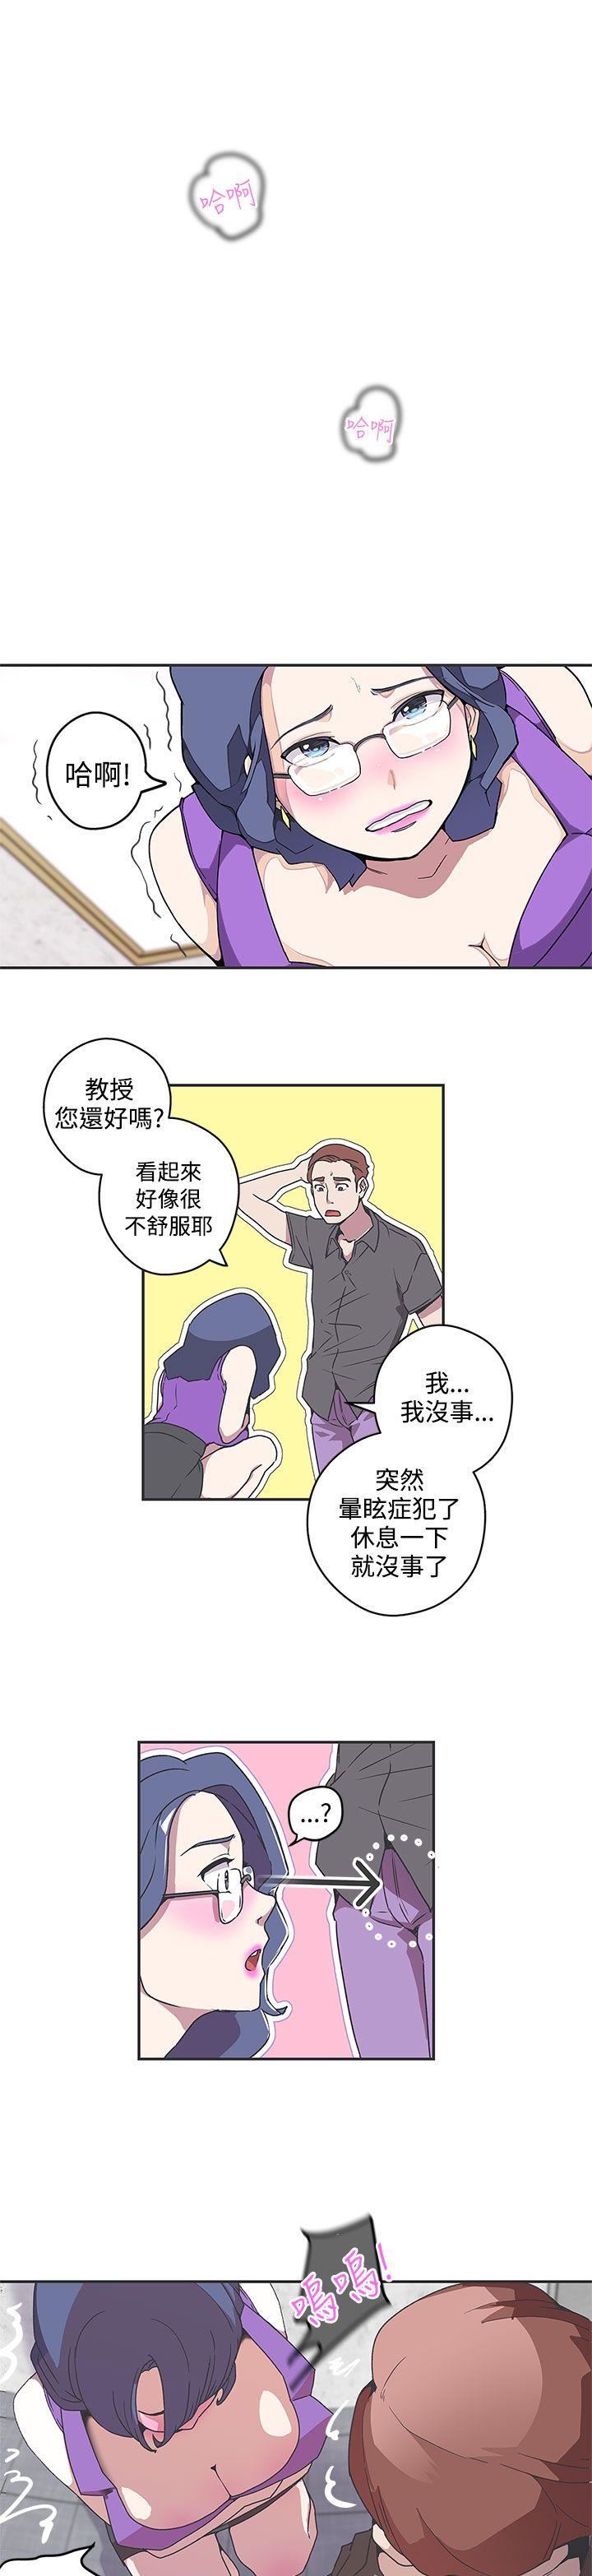 韩国污漫画 LOVE 愛的導航G 第42话 1